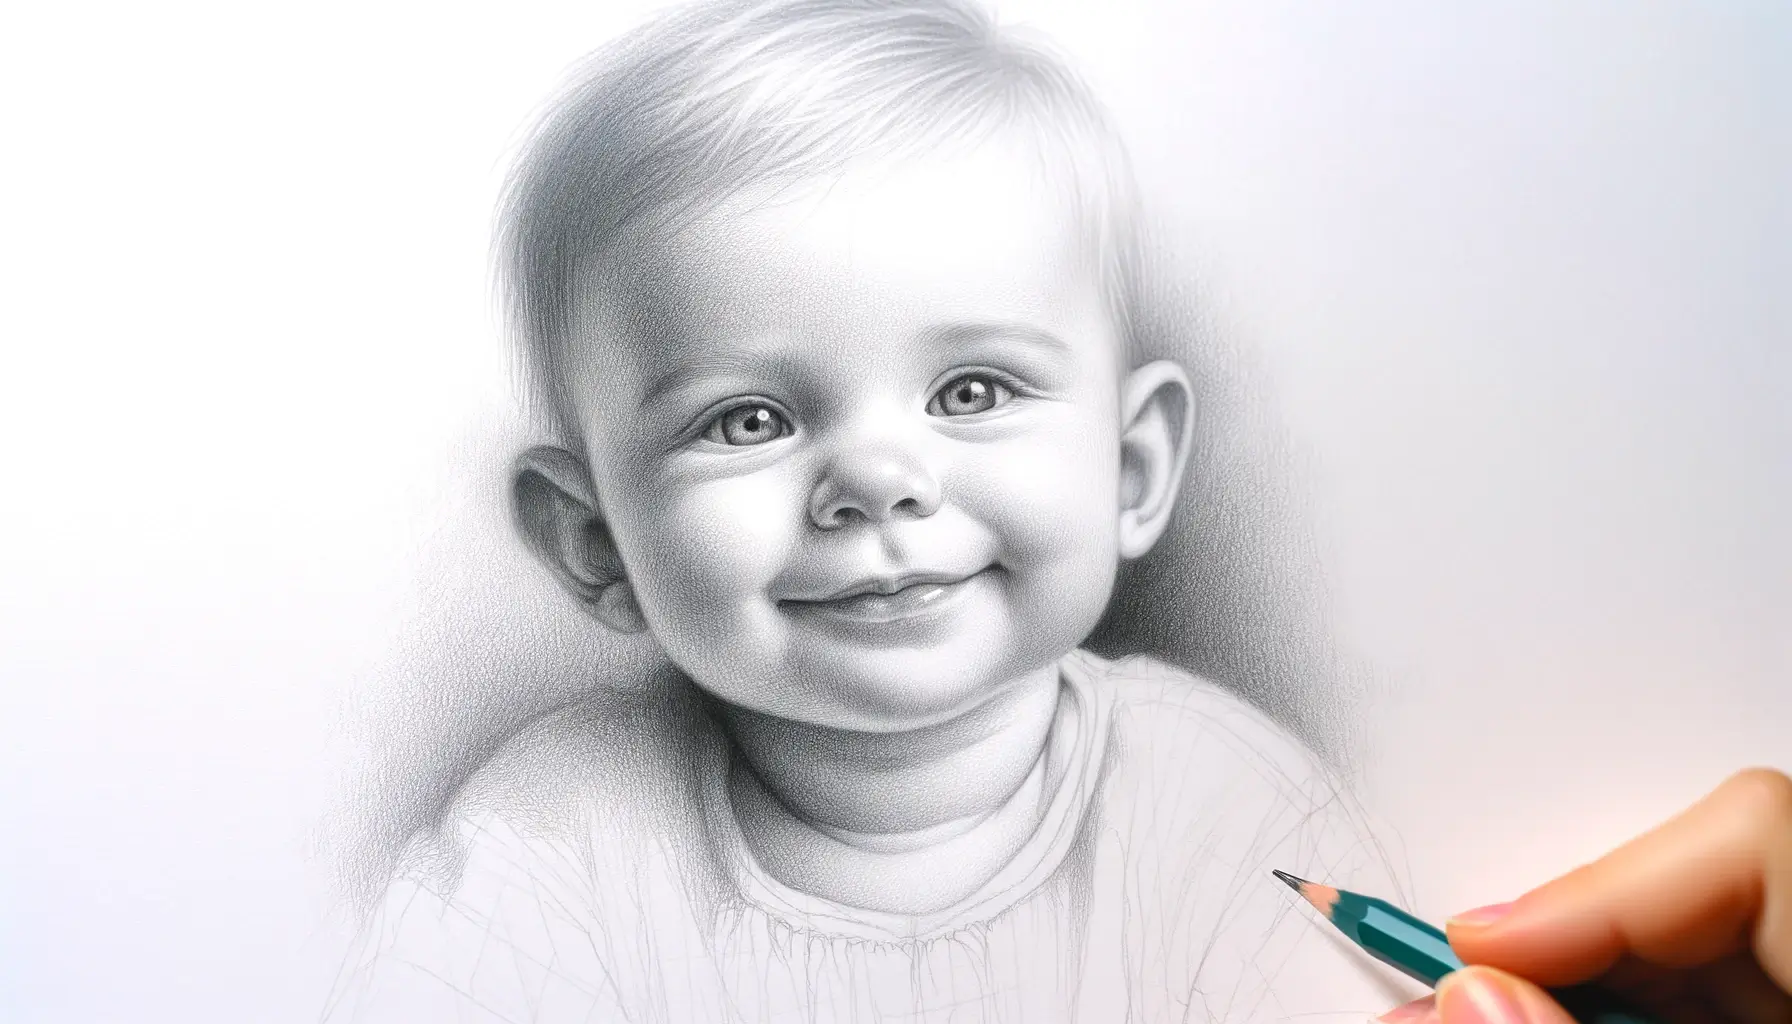 Skitsetegning af sød baby der smiler